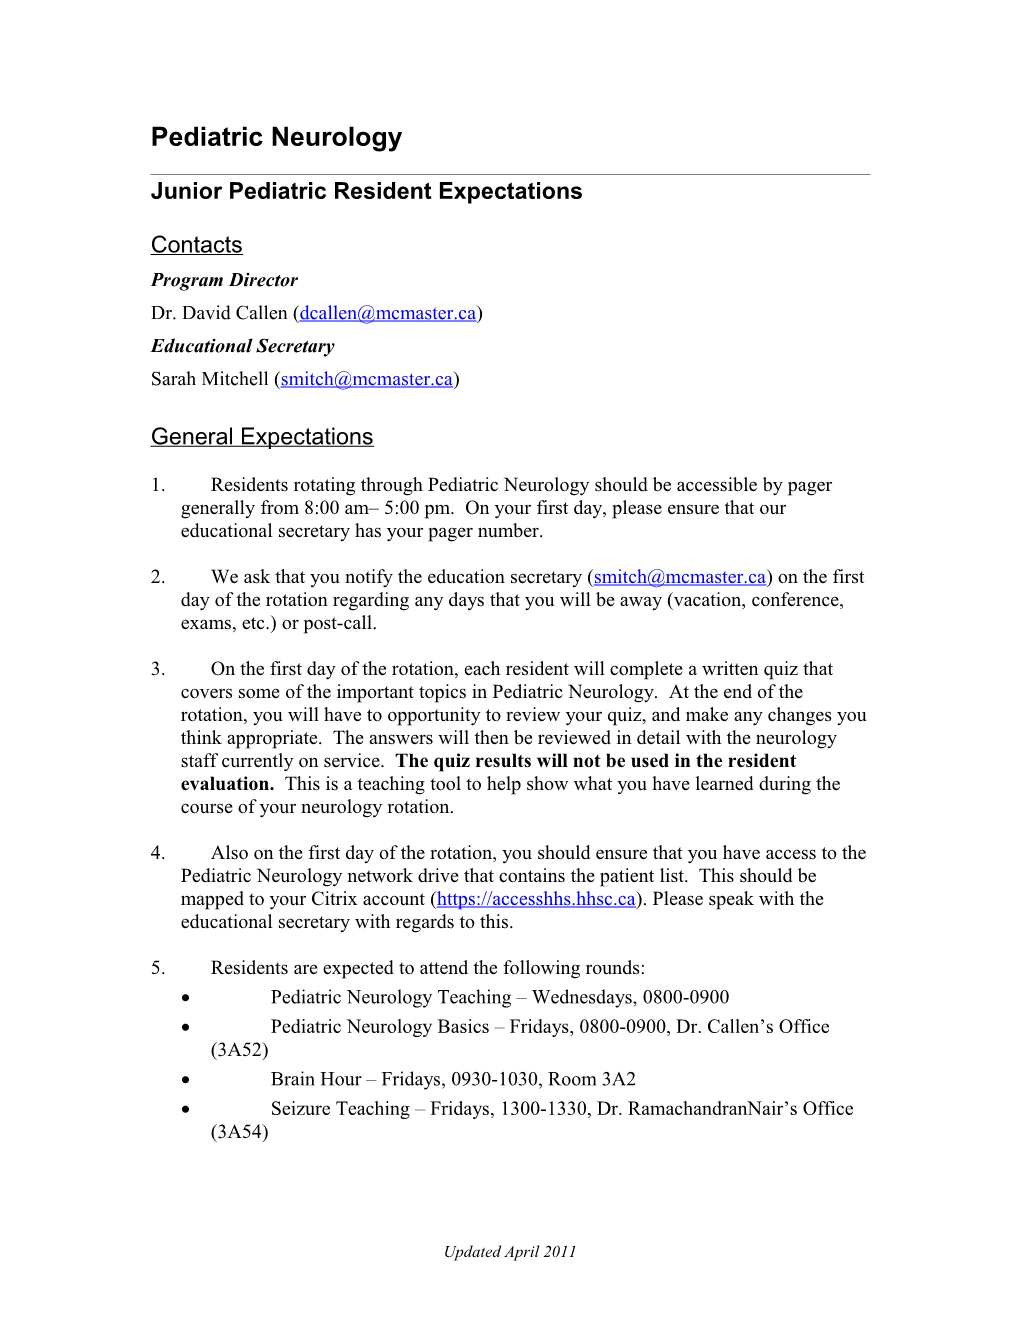 Junior Pediatric Resident Expectations